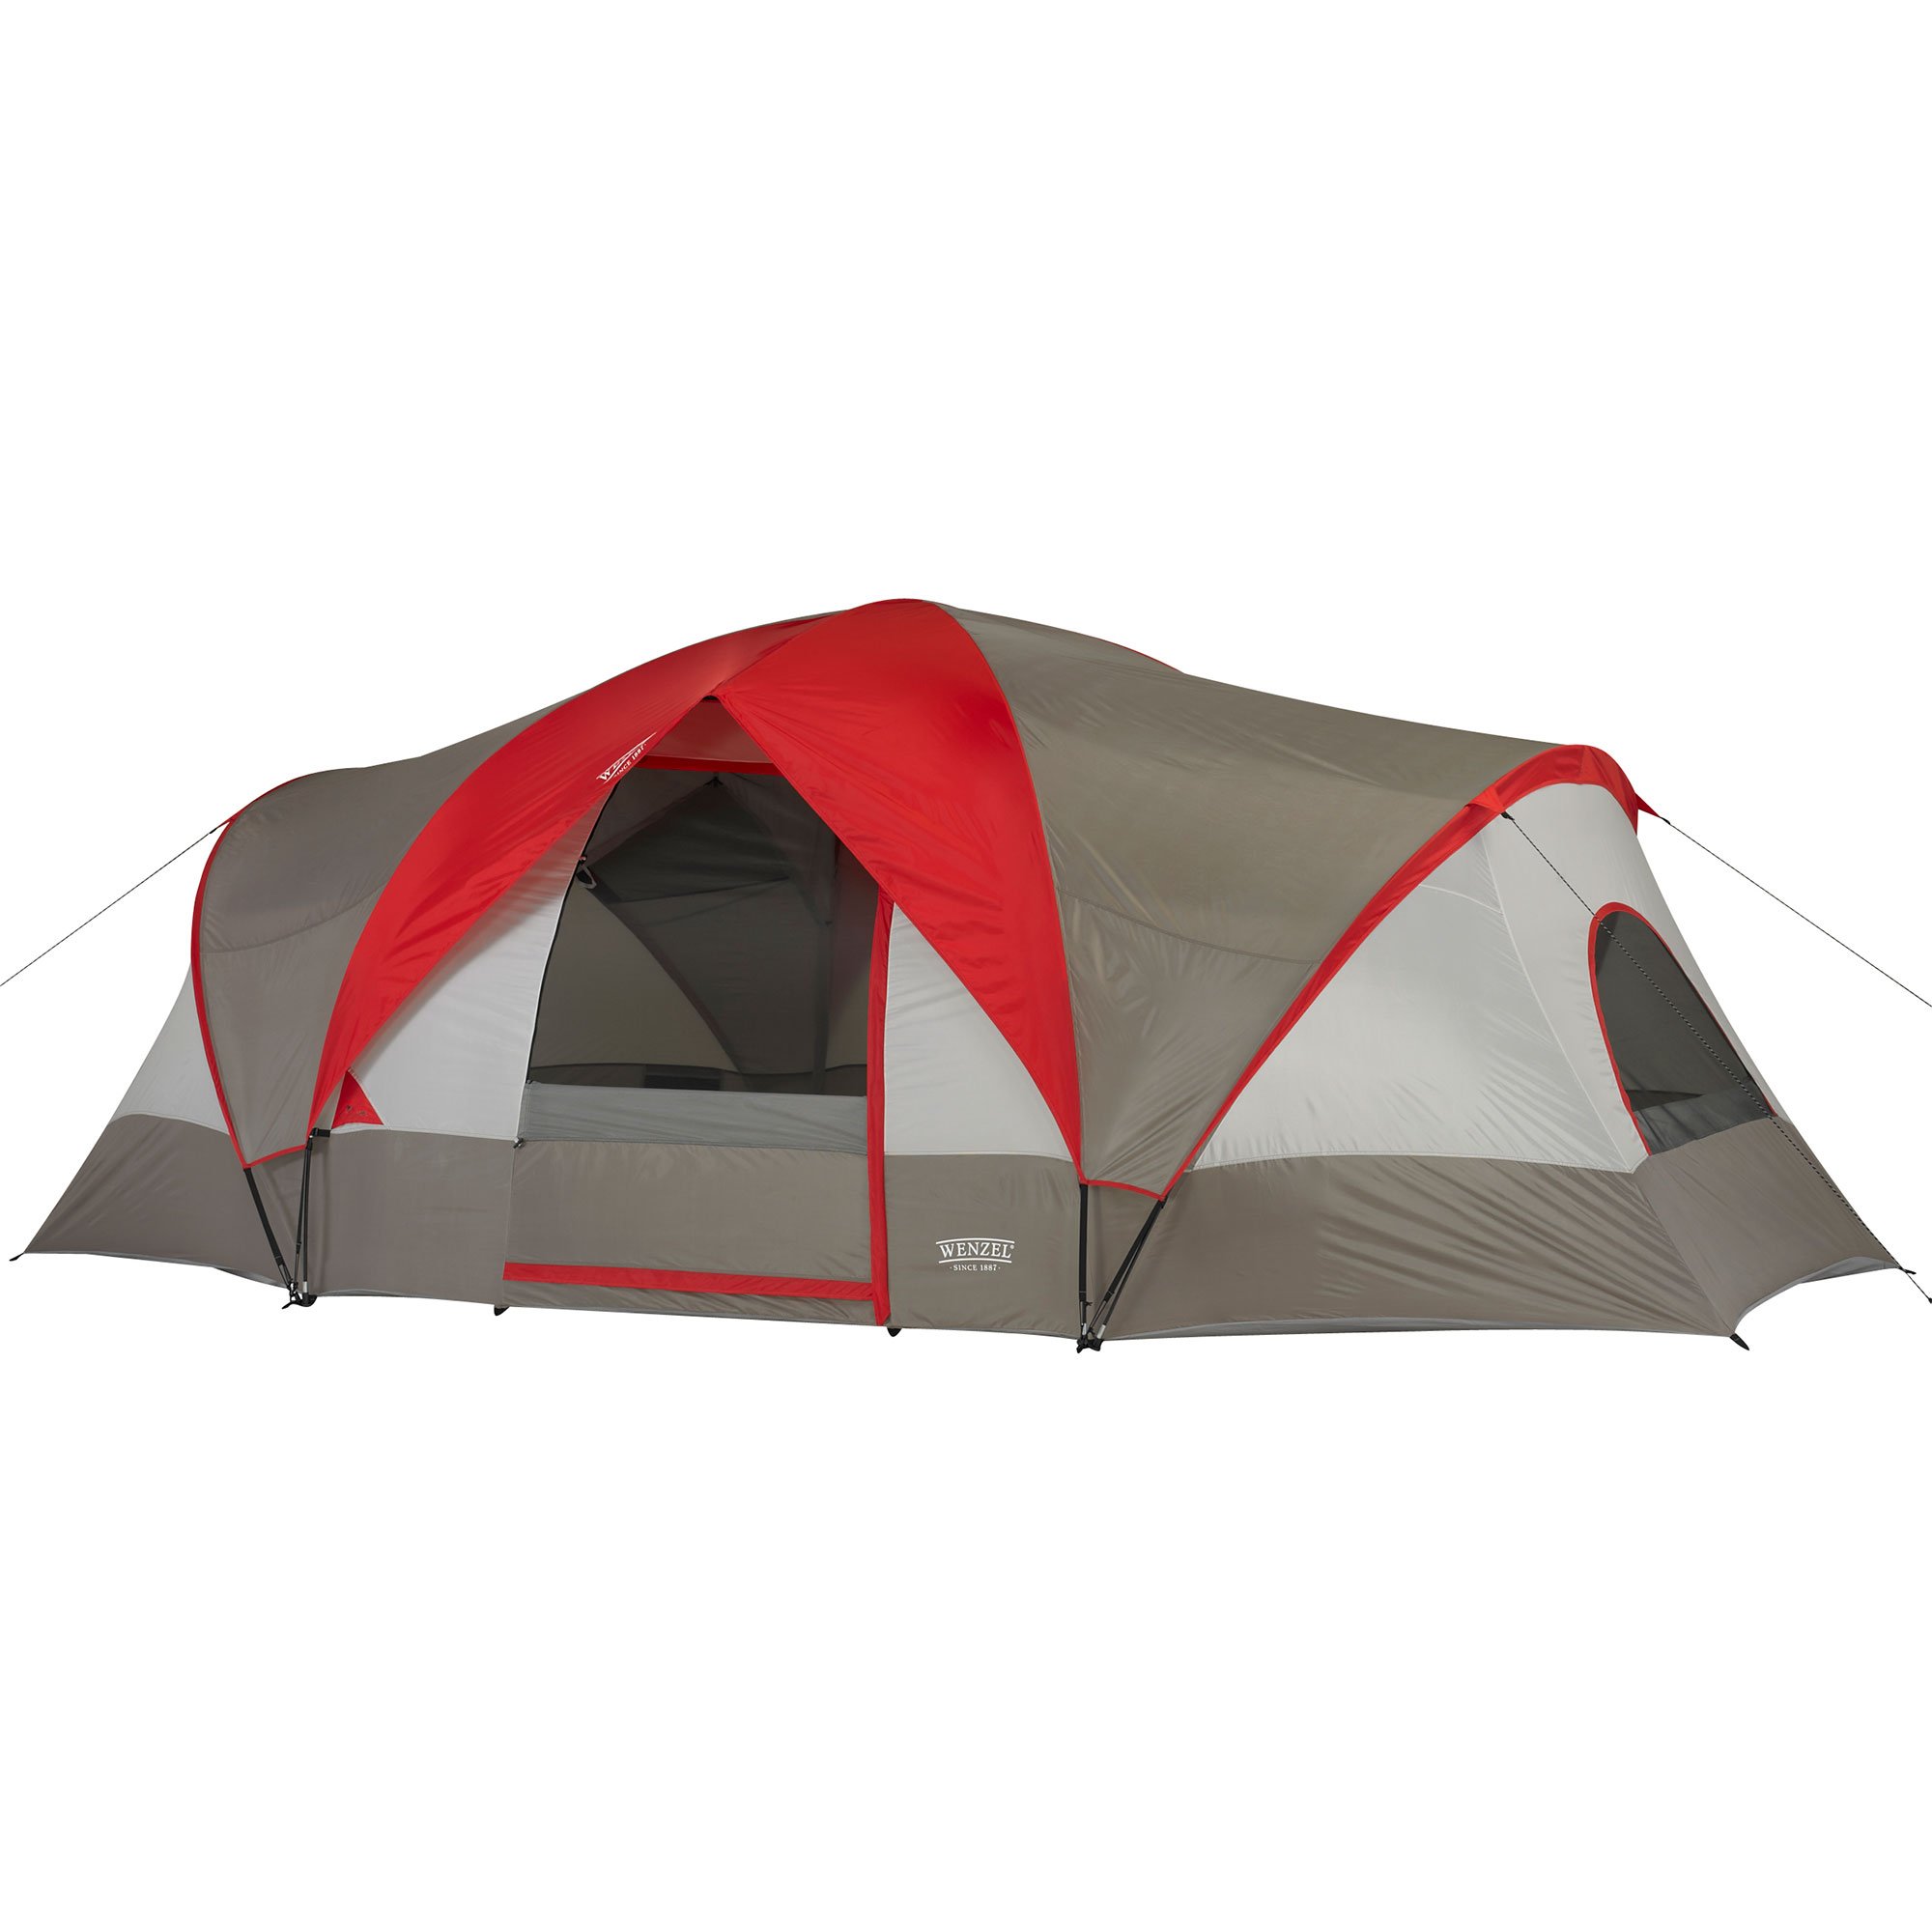 Ozark 6 person dome tent